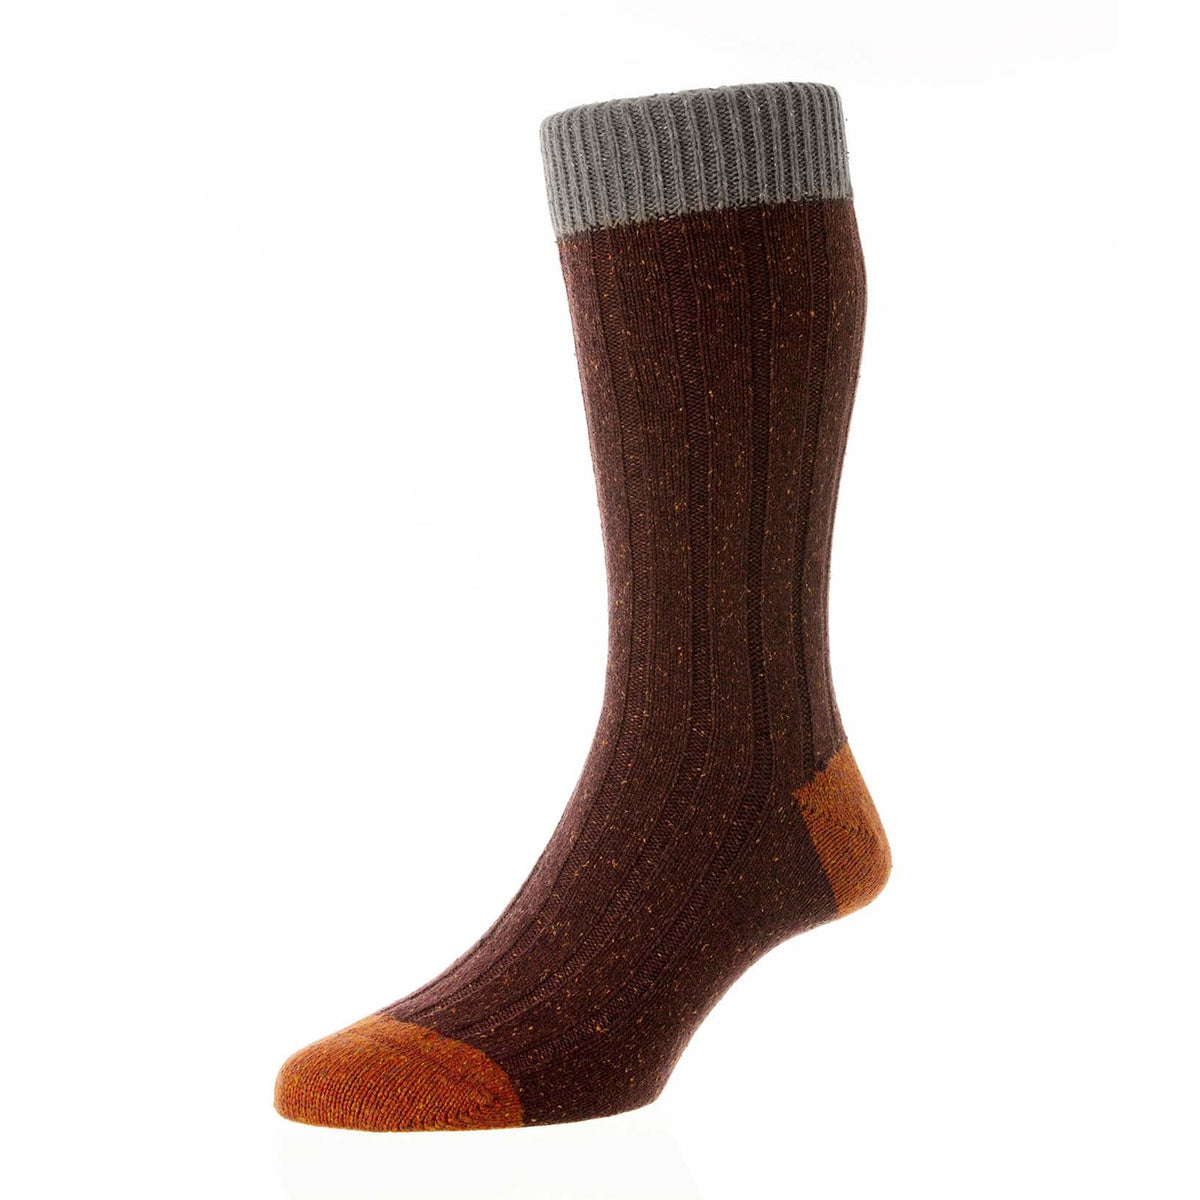 Thornham - 6x2 Rippen mit Kontrast Wolle Socke für Herren-Scott Nichol-Conrad Hasselbach Shoes &amp; Garment